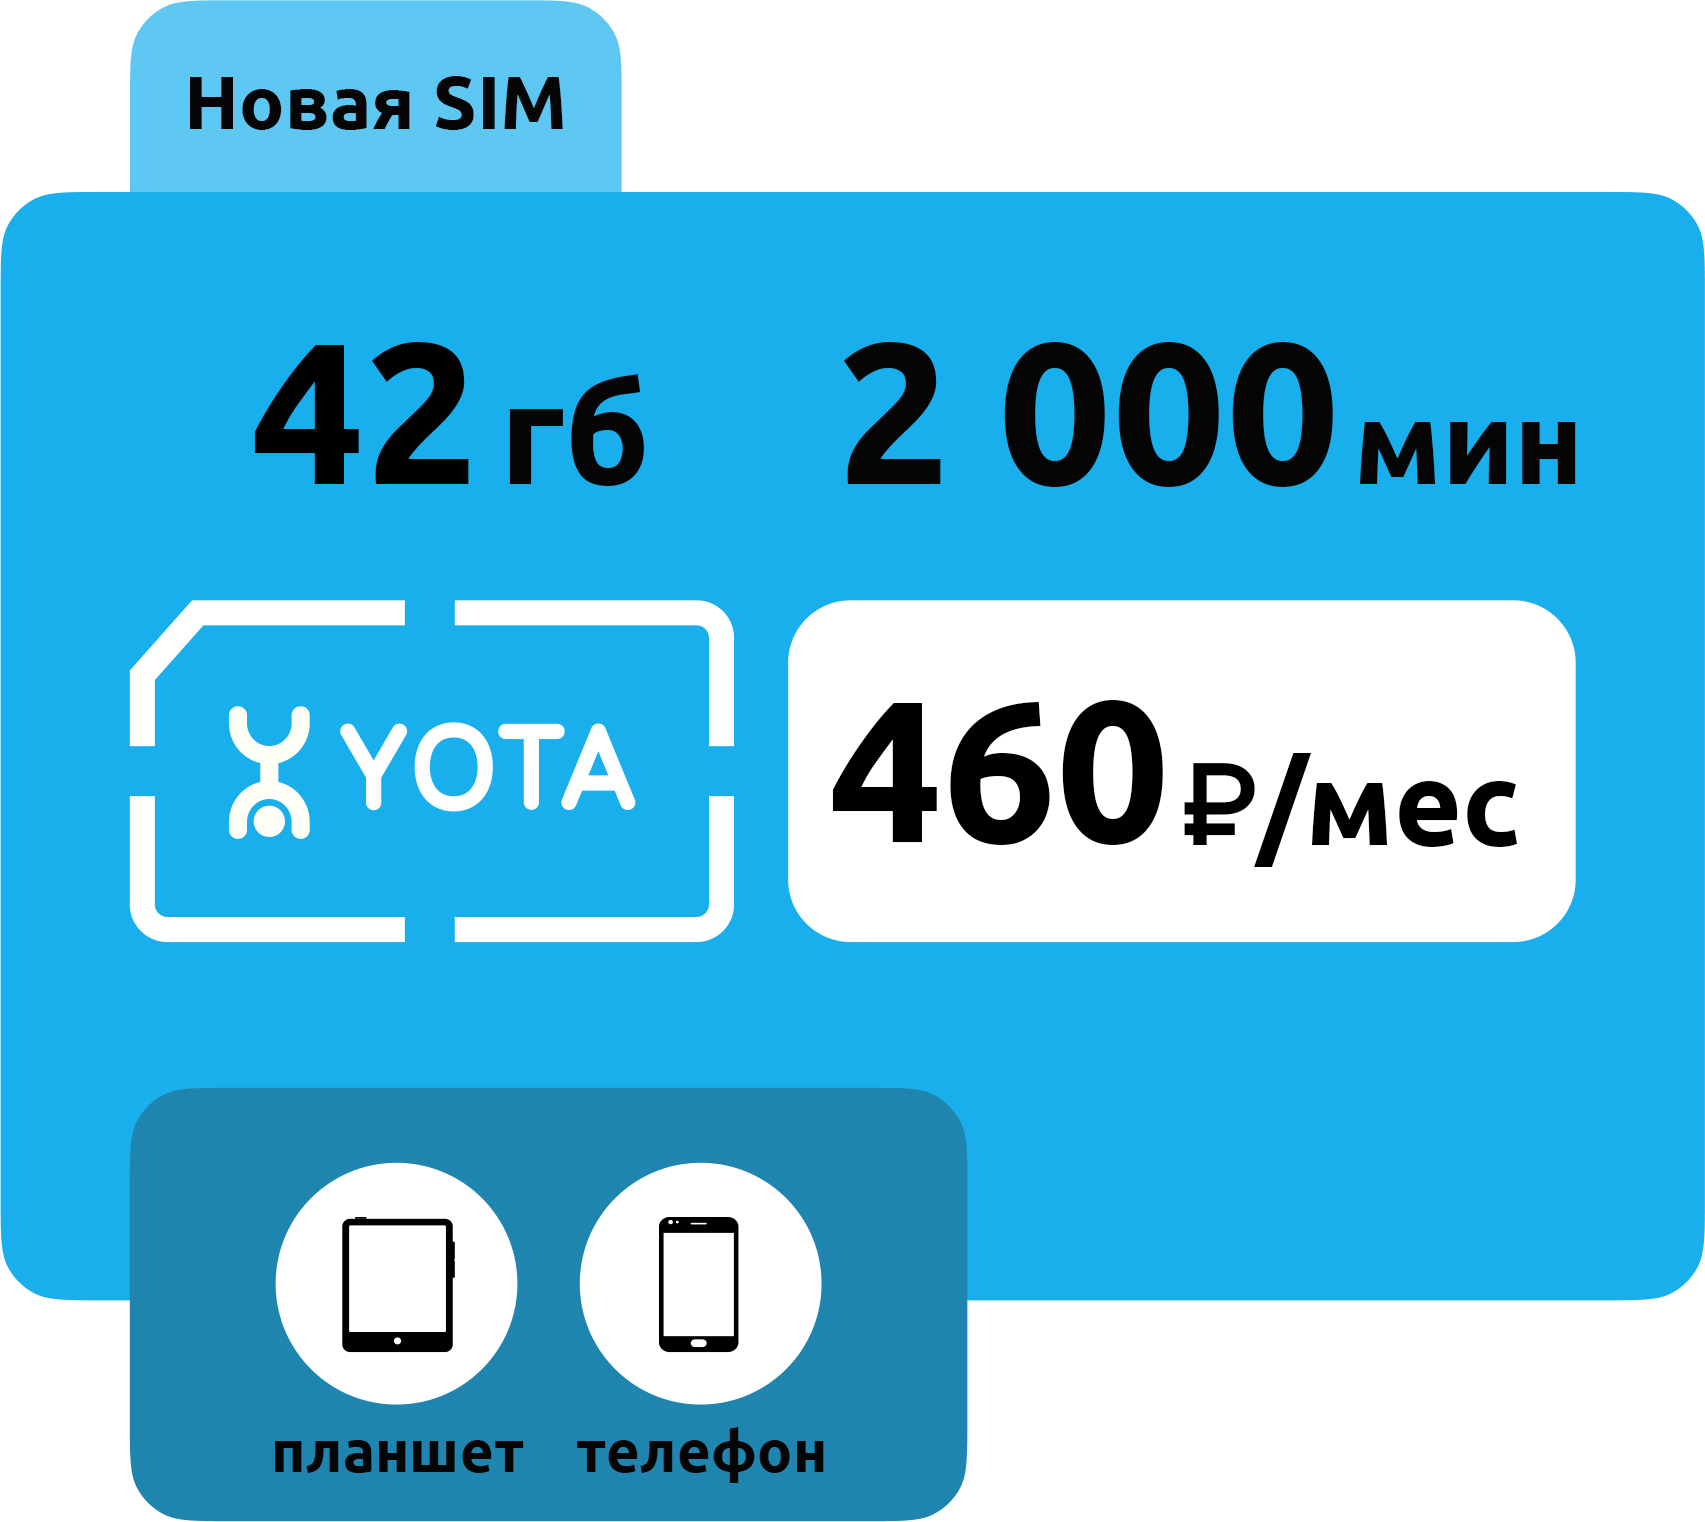 SIM-карта Yota 460 руб/месяц (42 ГБ)